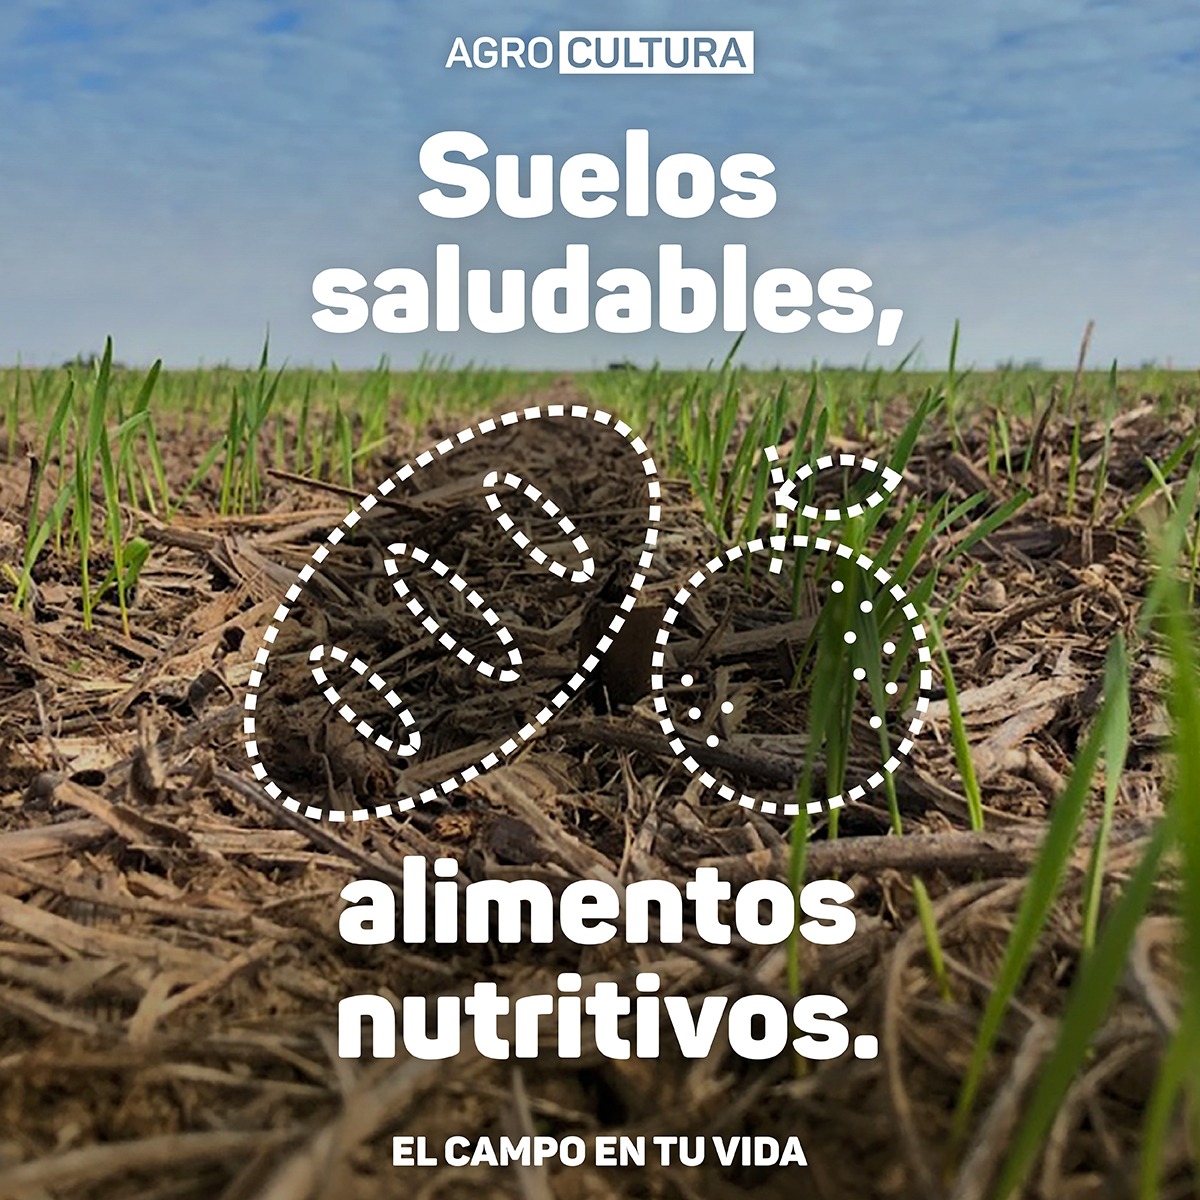 Con cada práctica sustentable, cada acción de cuidado del suelo, los agricultores traen a nuestras mesas alimentos más nutritivos 🌱En este #DíaMundialDelSuelo nos sumamos al lema de FAO y celebramos a los suelos como el origen de los alimentos #Soil4Nutrition #ElCampoEnTuVida